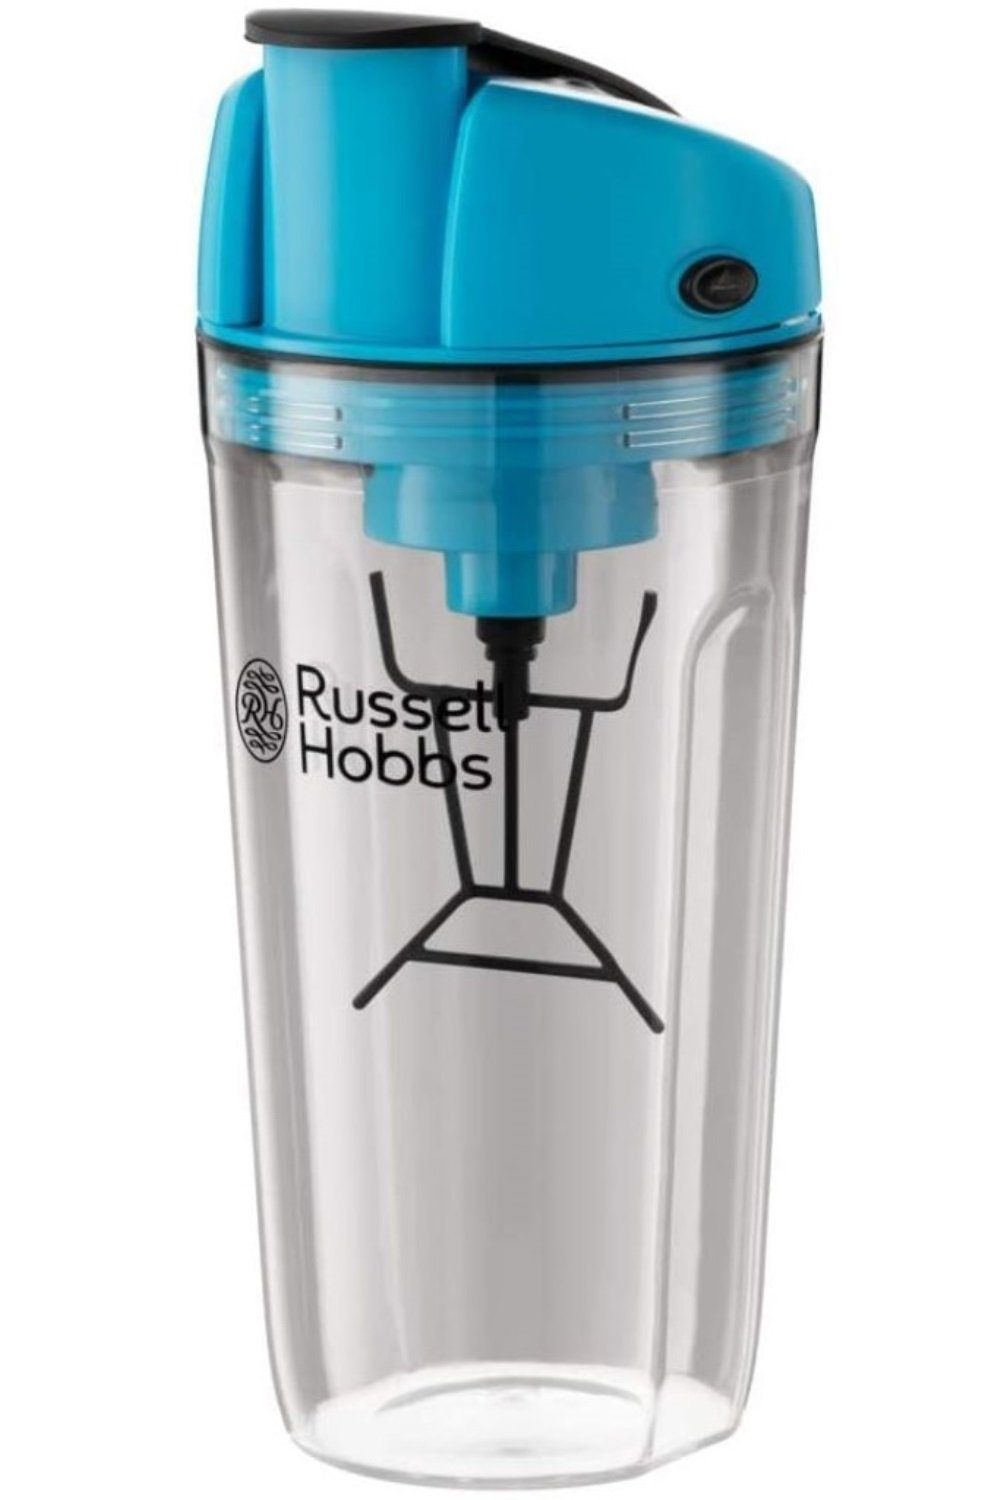 Hobbs 600 ml, Mixer RUSSELL spülmaschinengeeignet, Frei, HOBBS Stabmixer BPA USB-Ladefunktion mit InstaMixer Standmixer